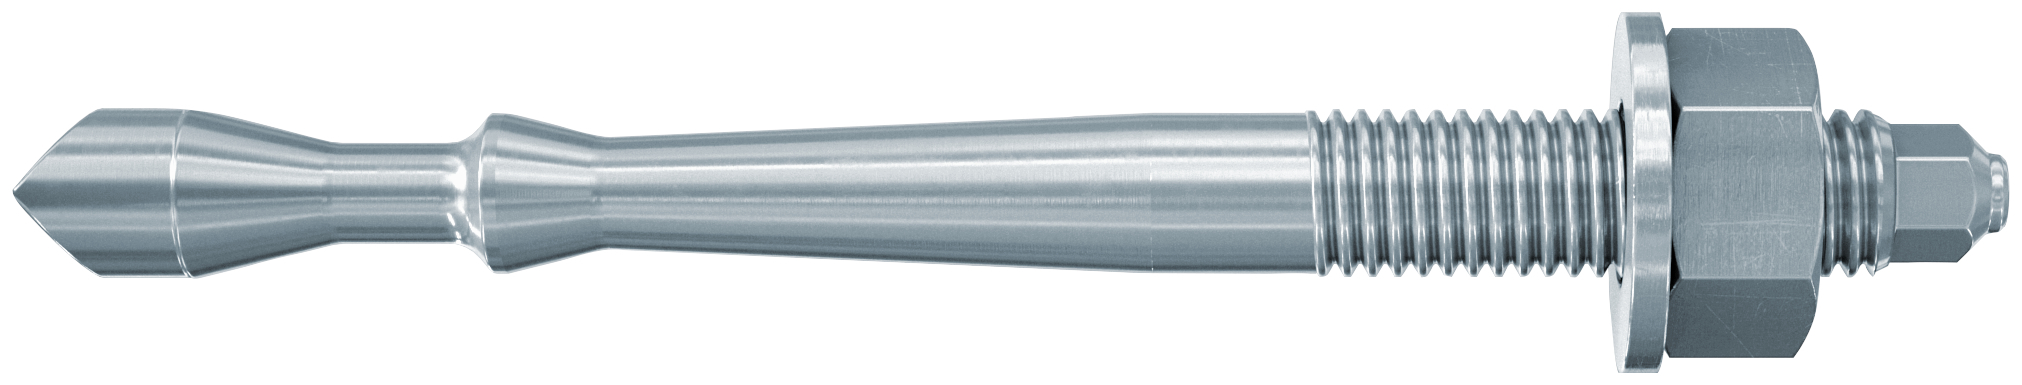 fischer Barra multicono in acciaio FHB II-A S M16x95/100 per ancorante chimico FIS HB (1 Pz.) Barra multicono corta in acciaio zincato classe 8.8. Massime prestazioni a trazione in calcestruzzo fessurato e a ridotte distanze dai bordi..